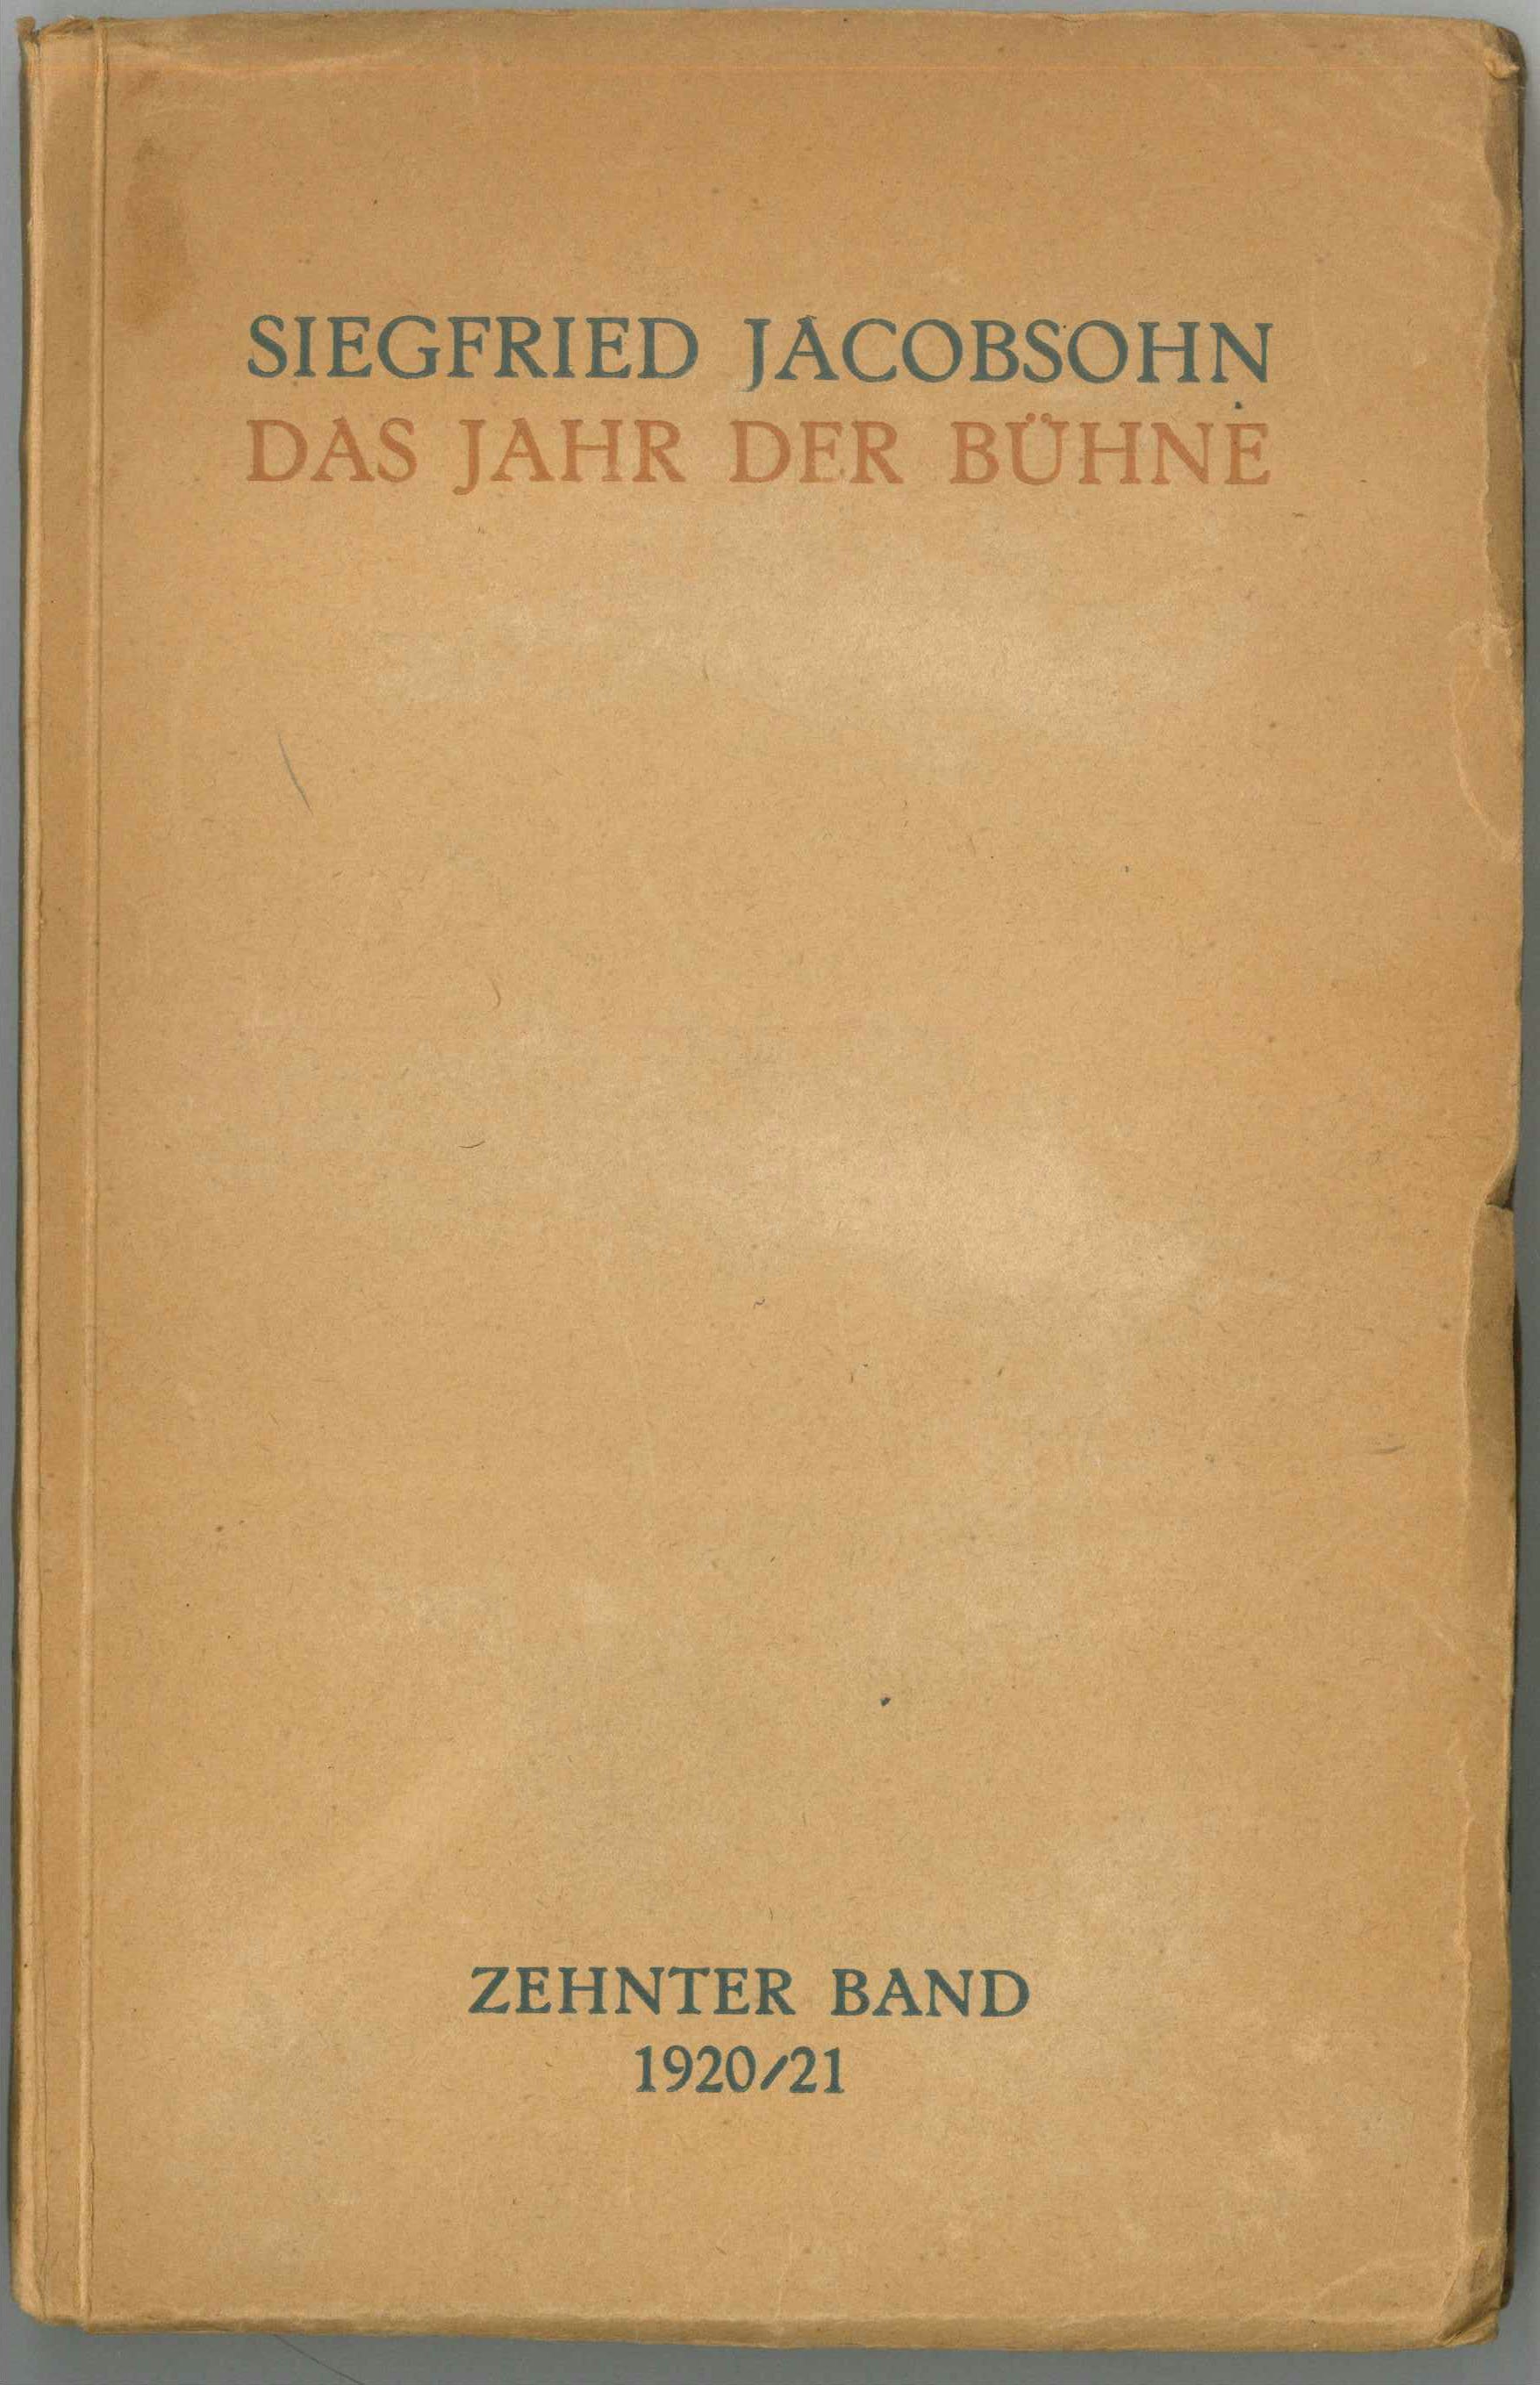 Siegfried Jacobsohn Das Jahr der Bühne 1920/21 (Kurt Tucholsky Literaturmuseum CC BY-NC-SA)